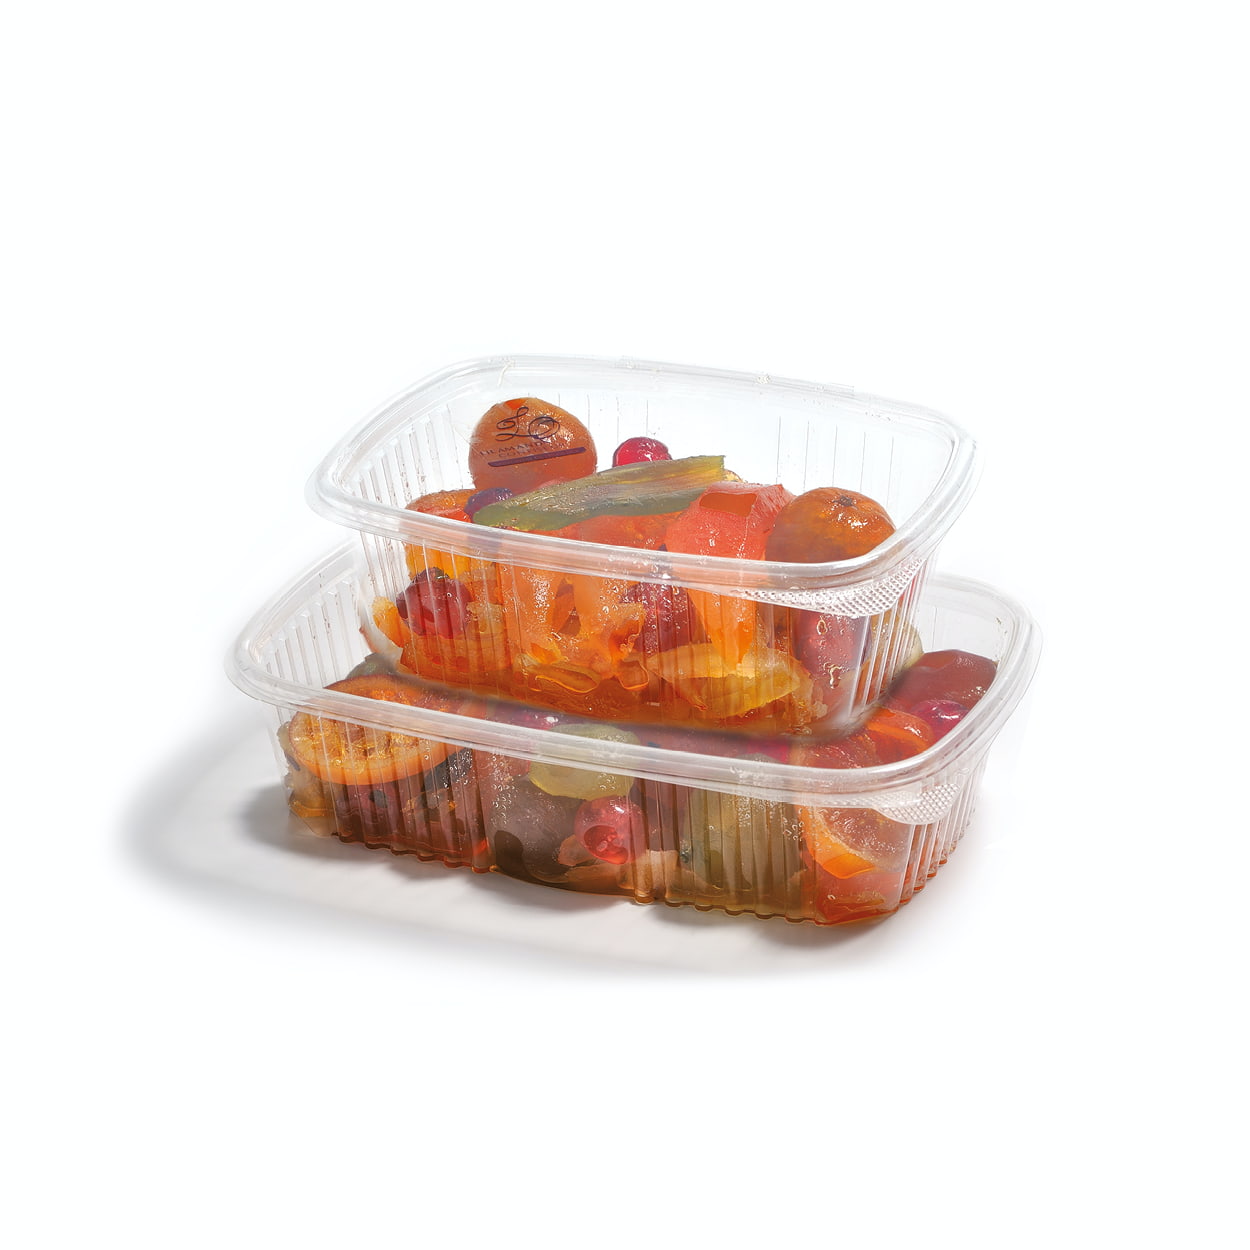 Fruits confits assortis pour pâtisserie, gâteaux ou cakes, boîte 1kg